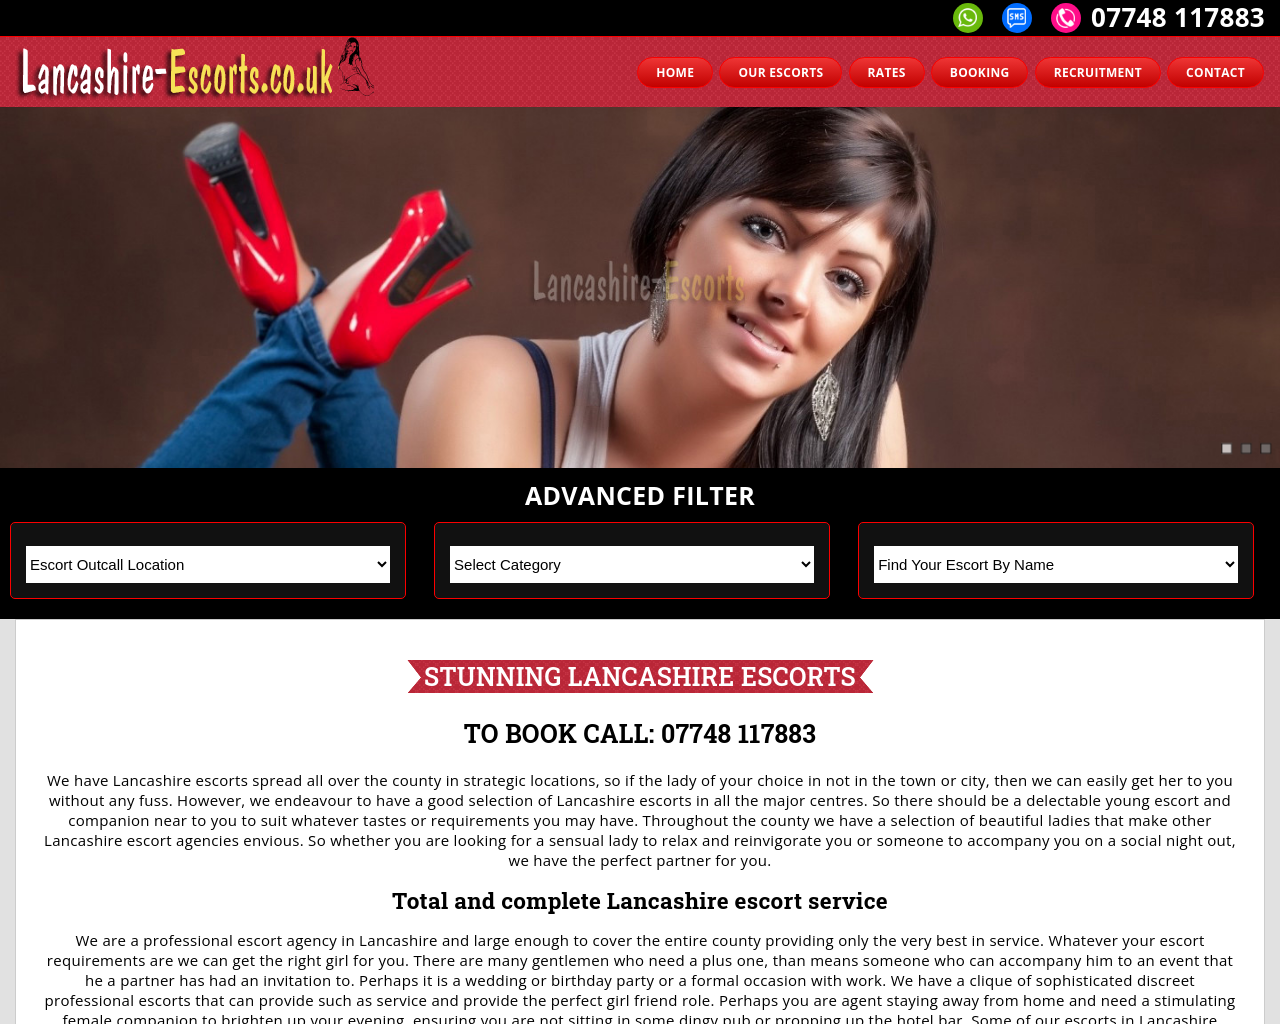 lancashire-escorts.co.uk